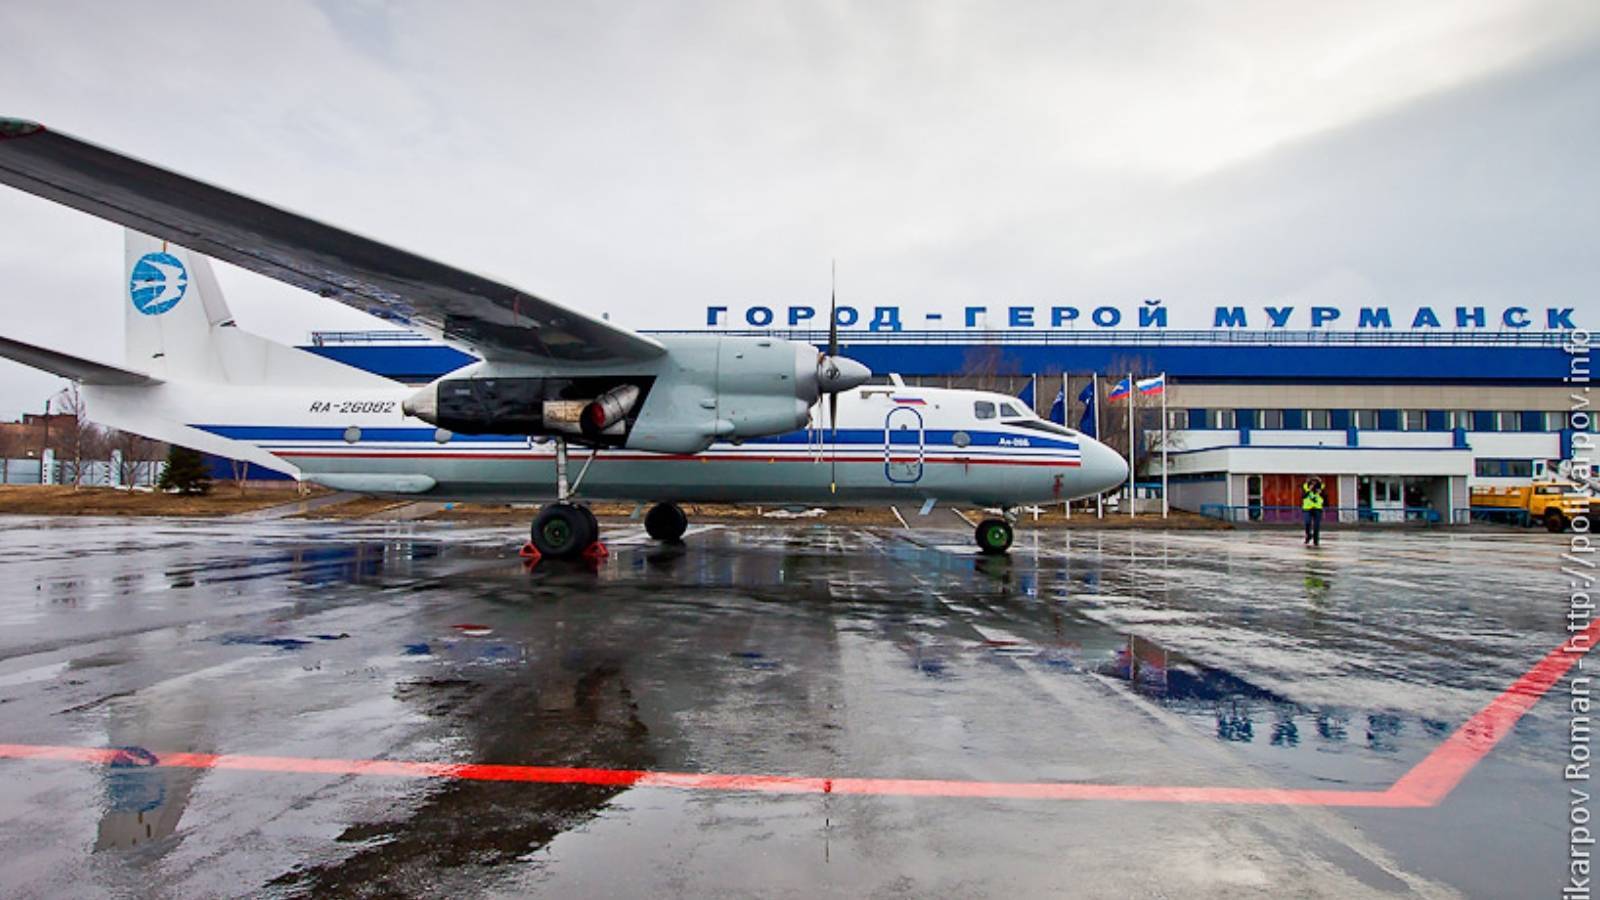 Аэропорт мурманск (mmk): описание аэропорта, как его назвали, другие аэропорты мурманской области